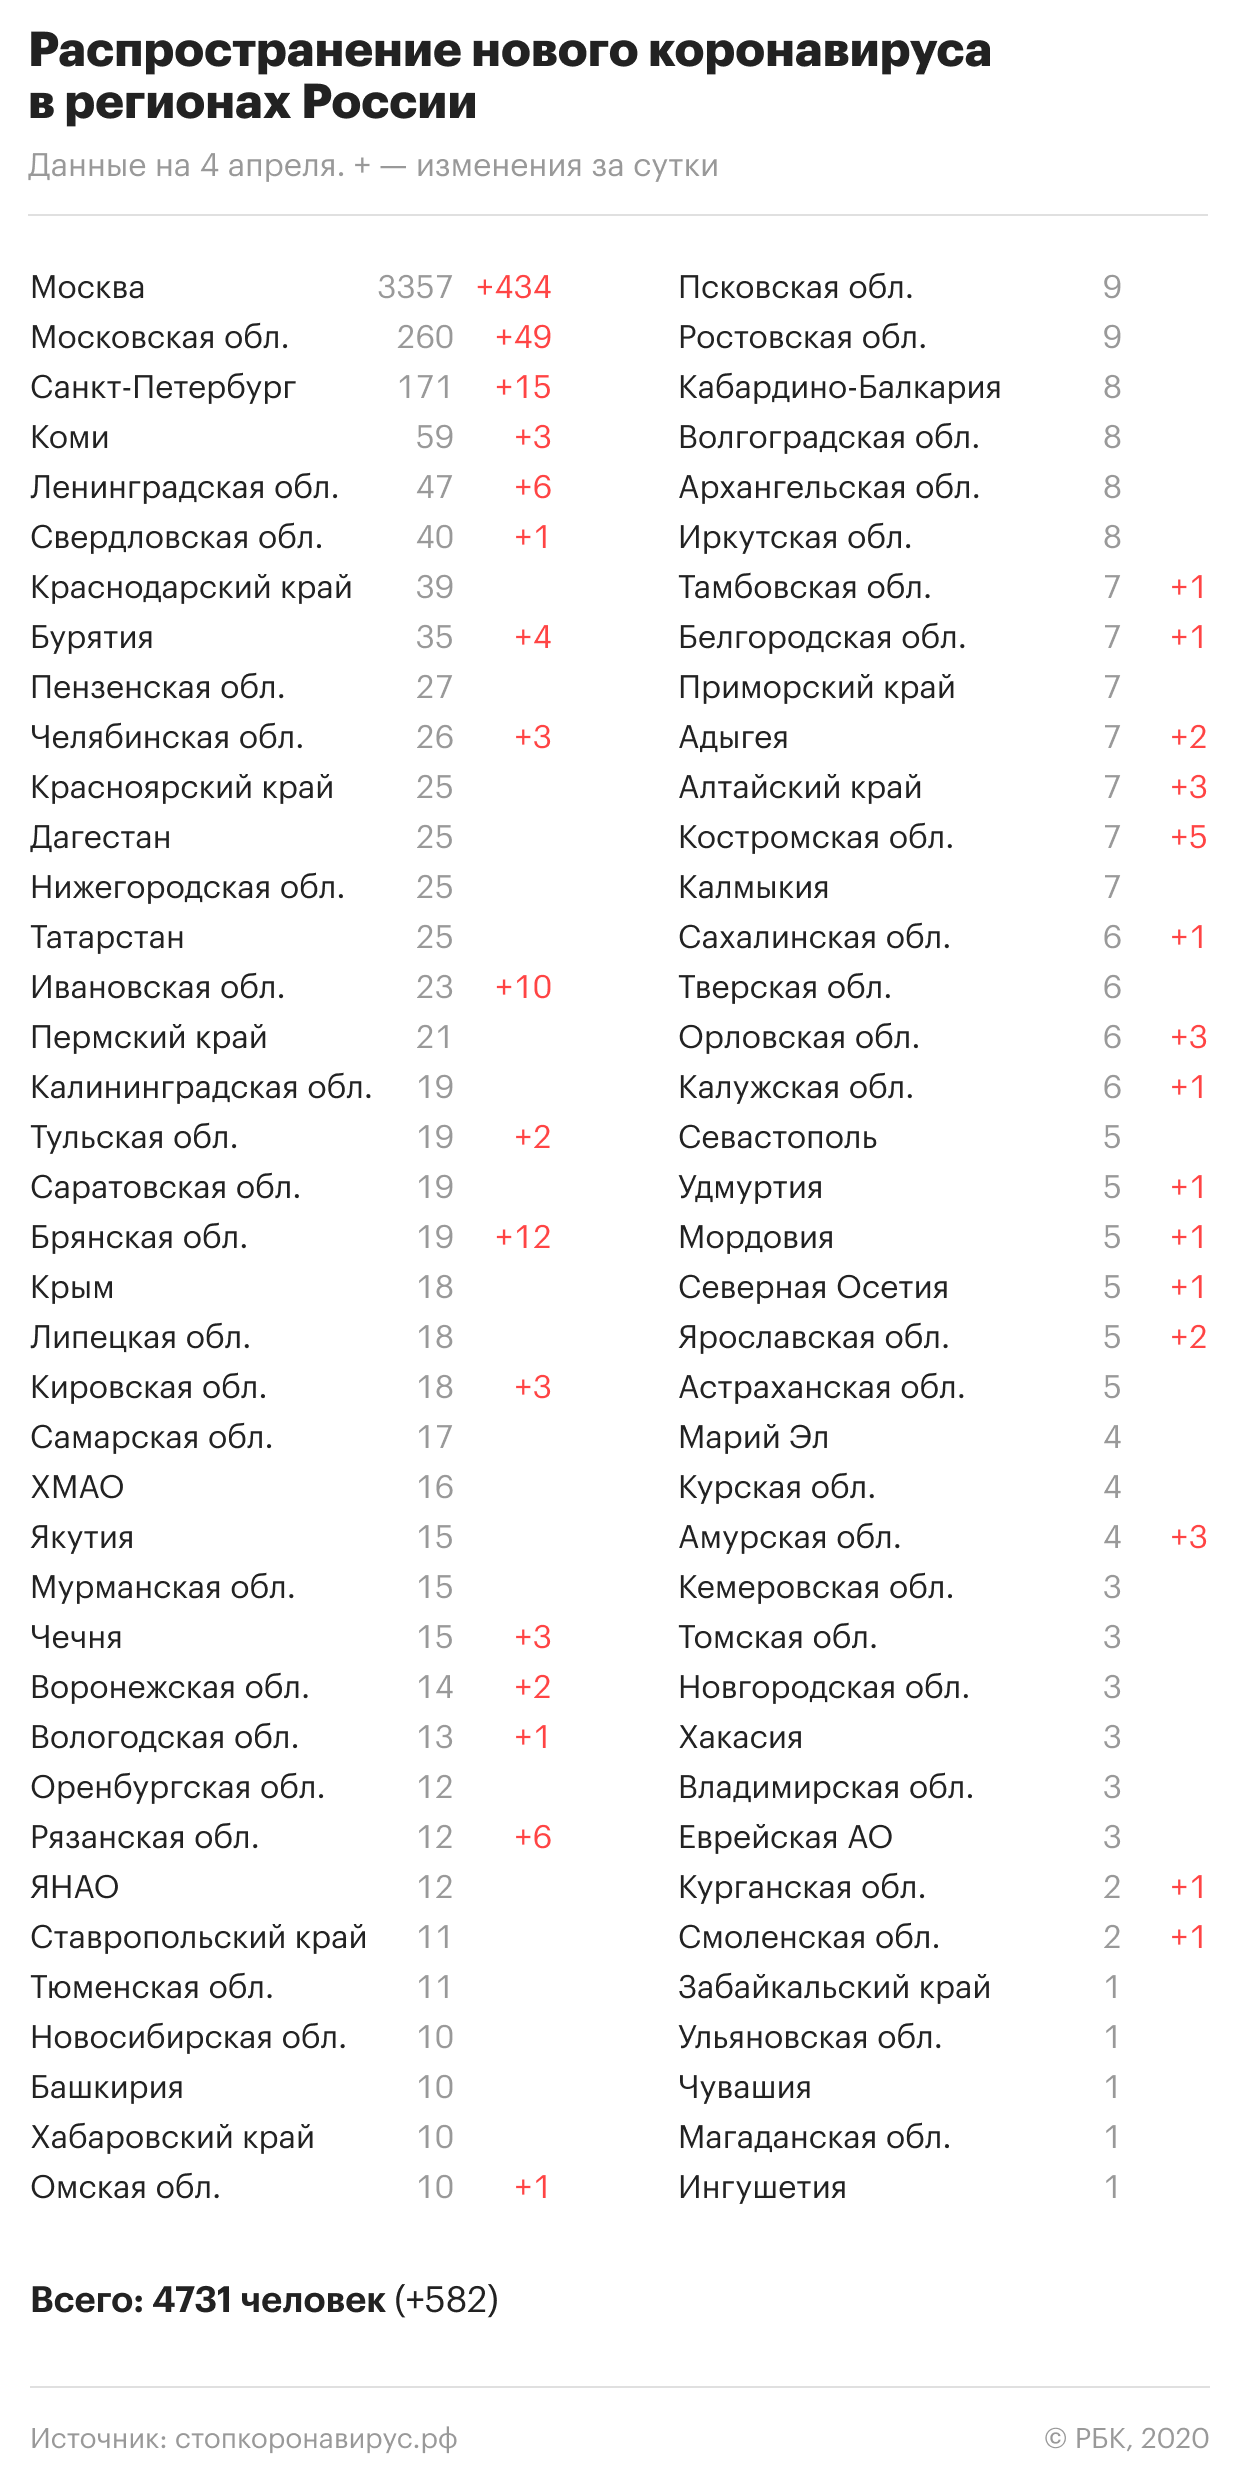 Сколько больных коронавирусом в России на сегодня, 05.04.2020 год